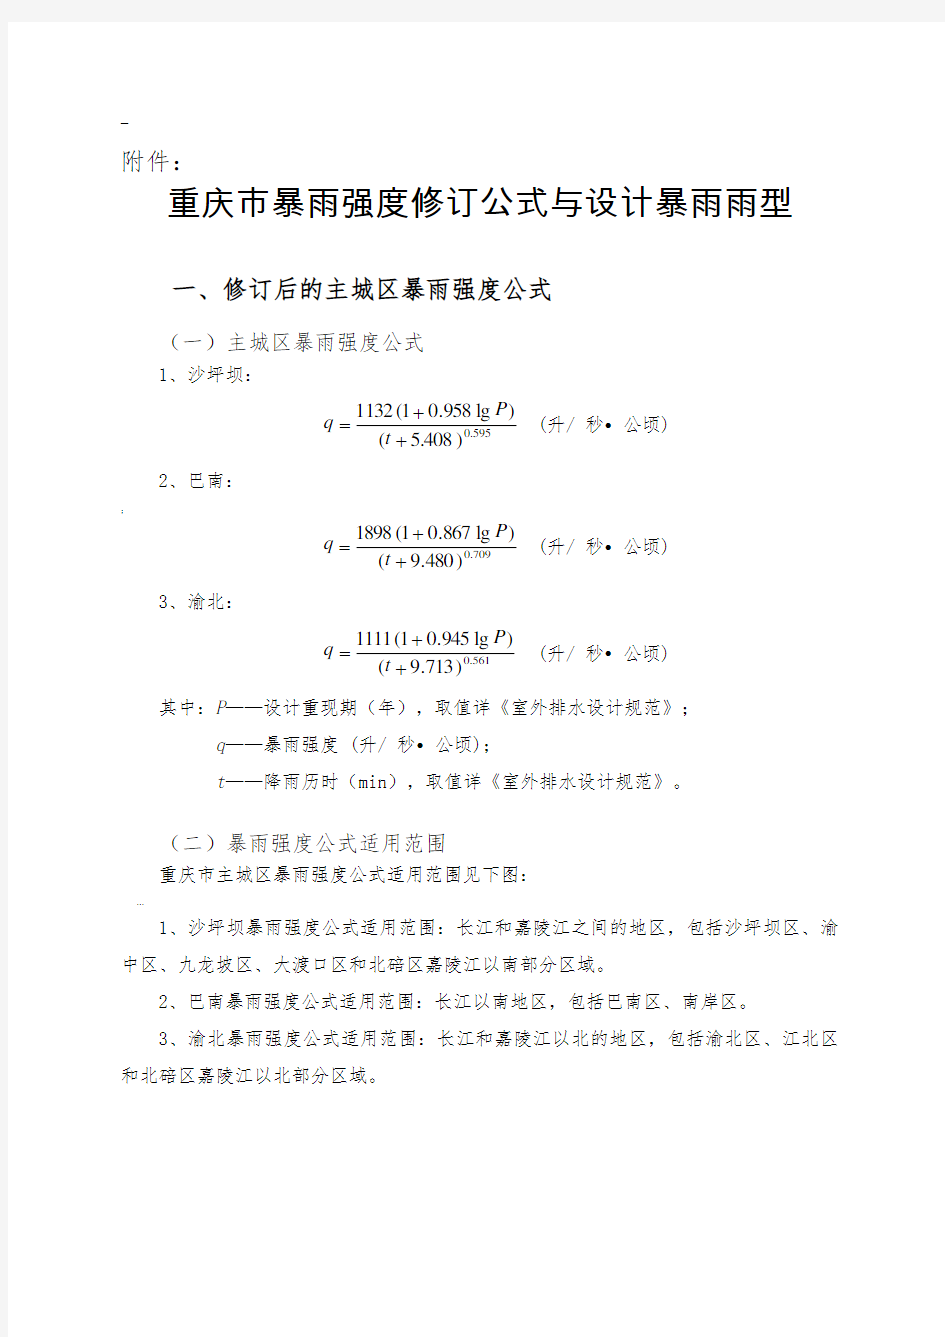 重庆市暴雨强度修订公式与设计暴雨雨型